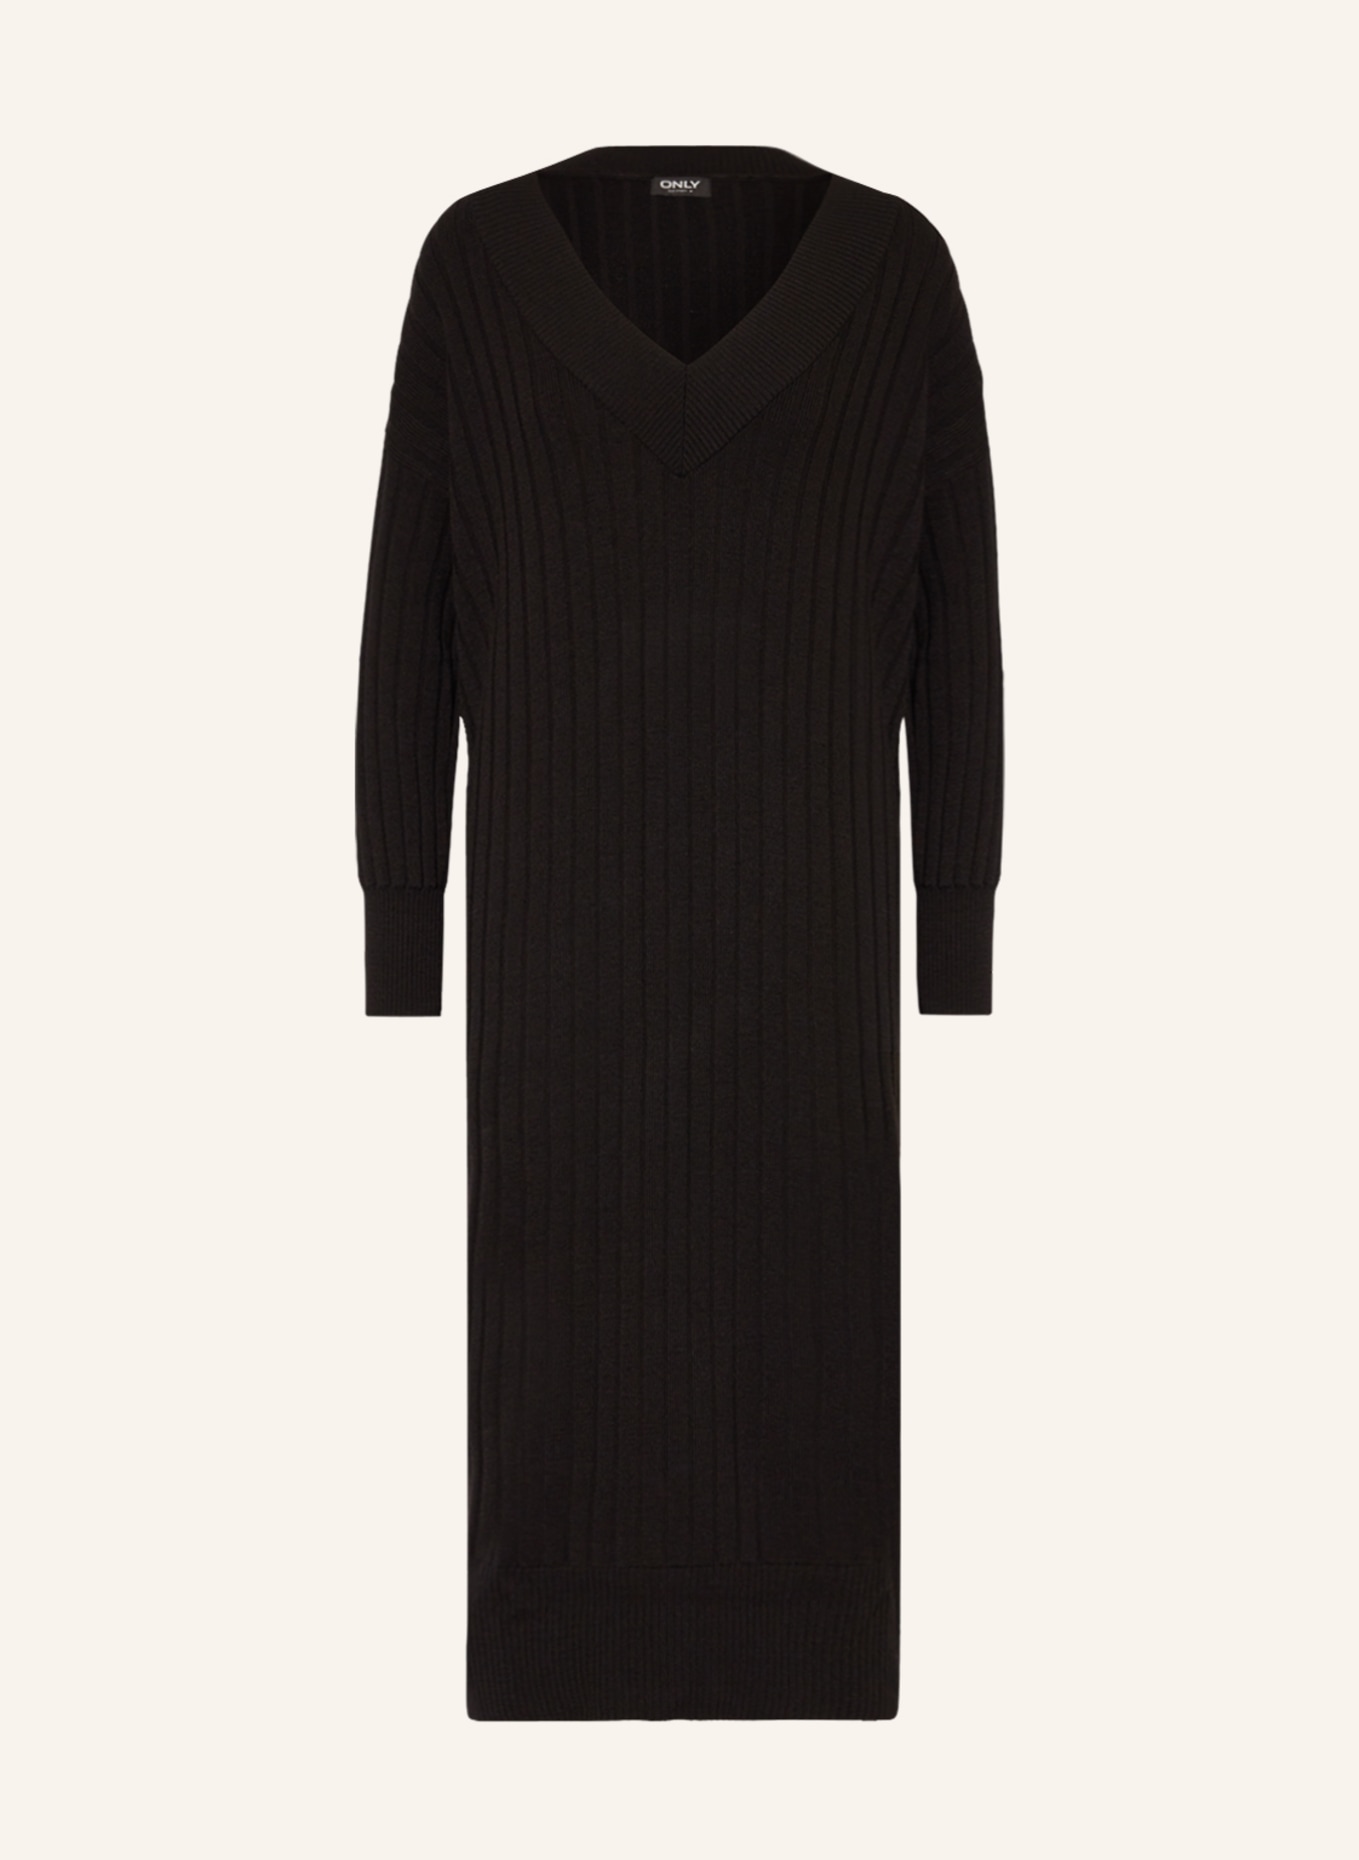 ONLY Knit dress, Color: BLACK (Image 1)